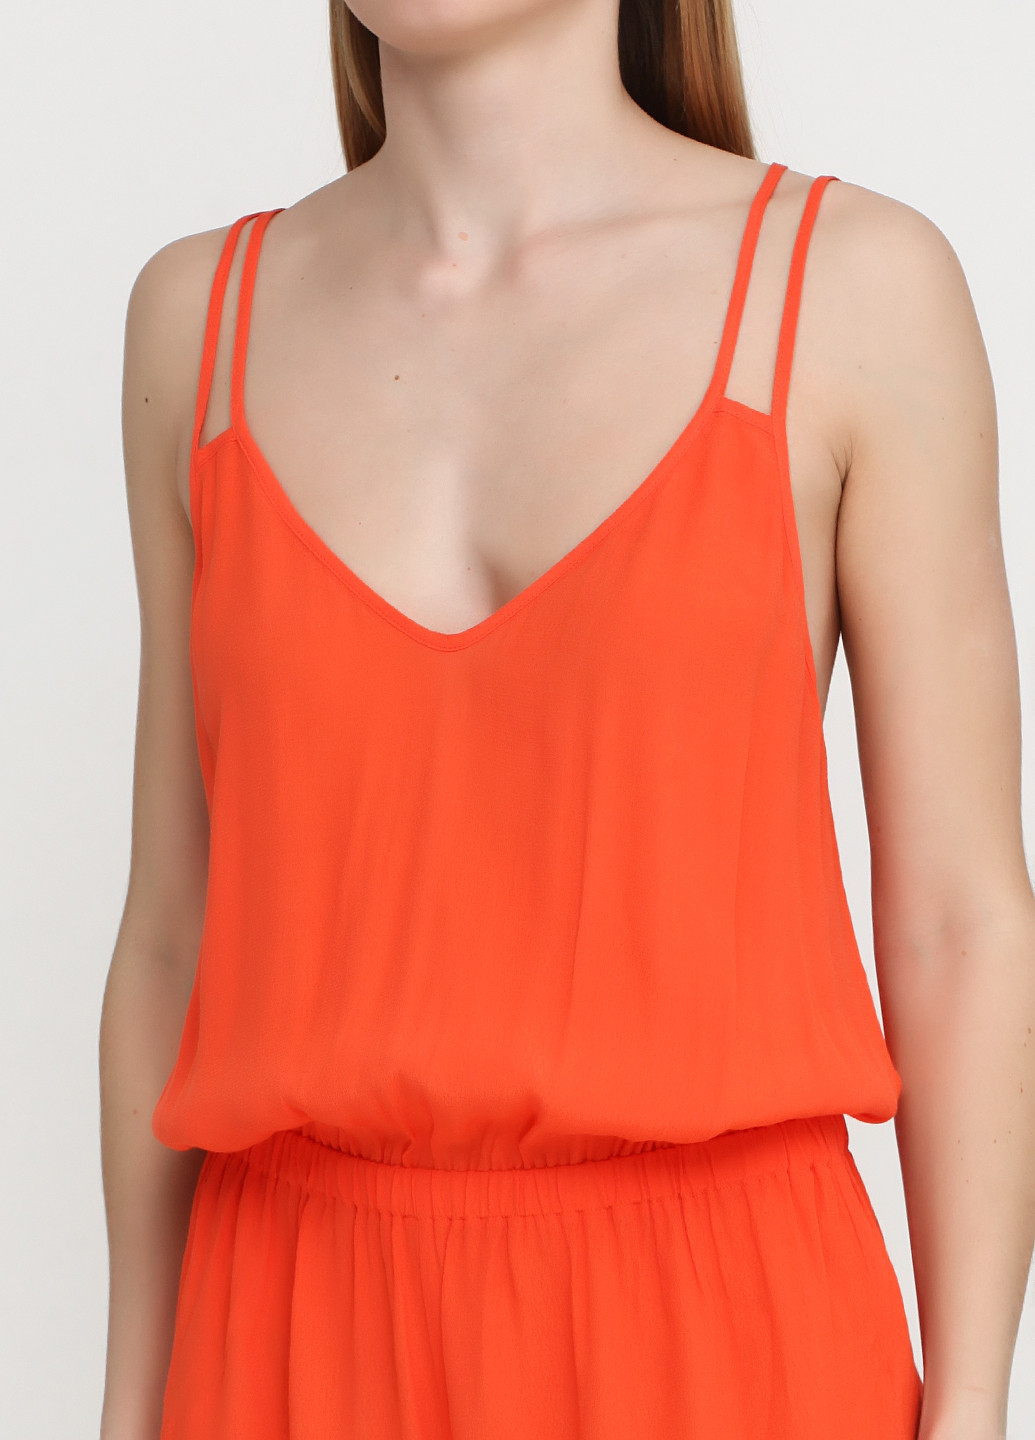 Комбинезон Women'secret комбинезон-шорты однотонный оранжевый пляжный